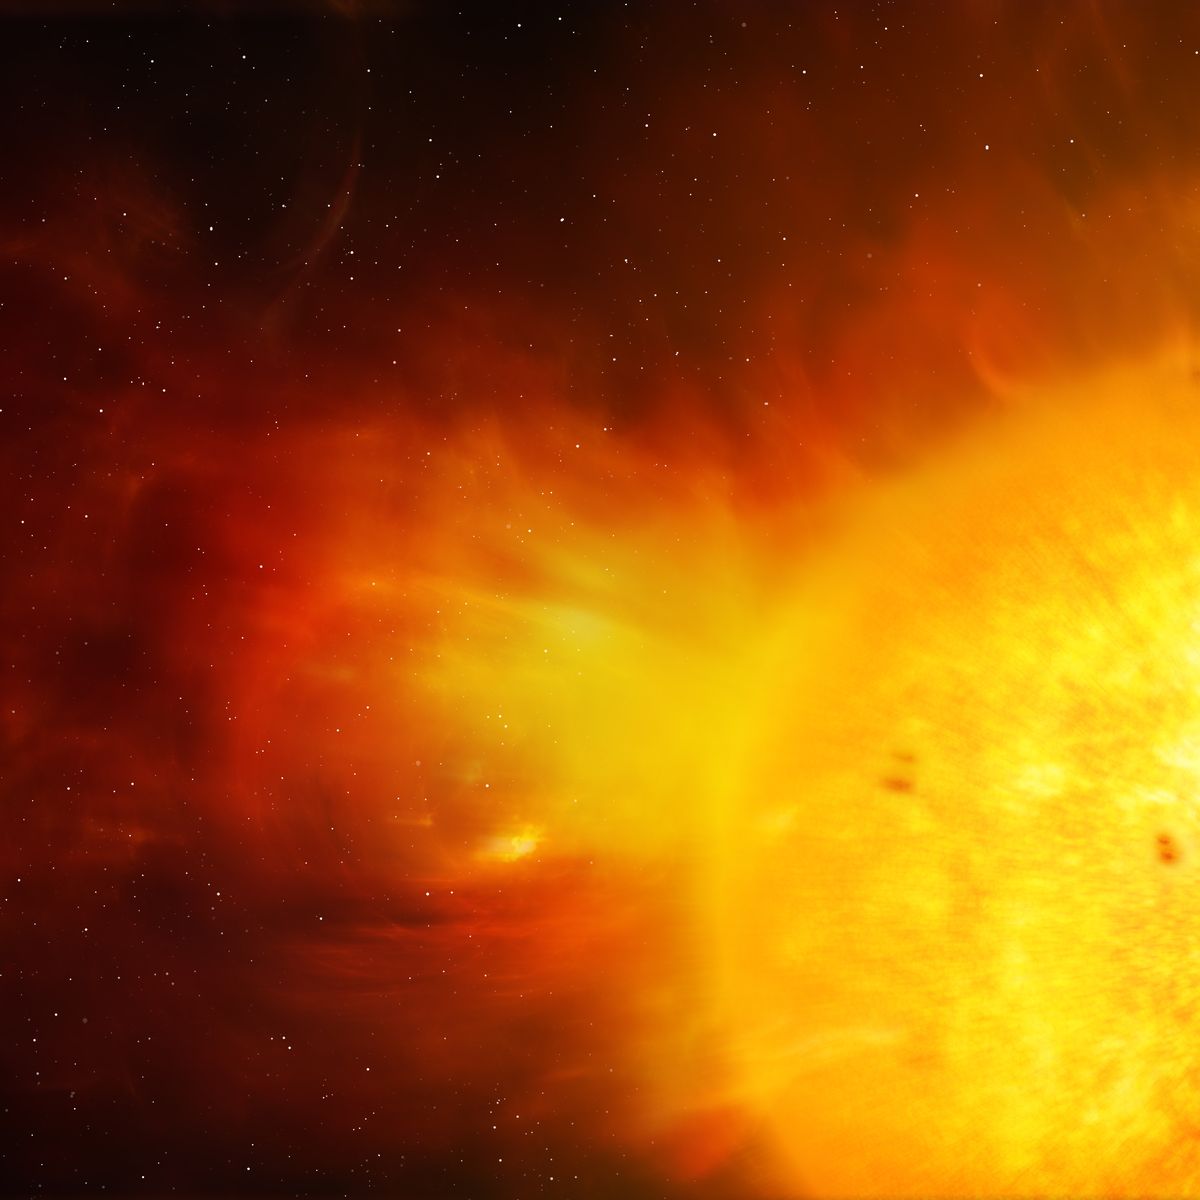 White-Light Solar Flares Finally Explained